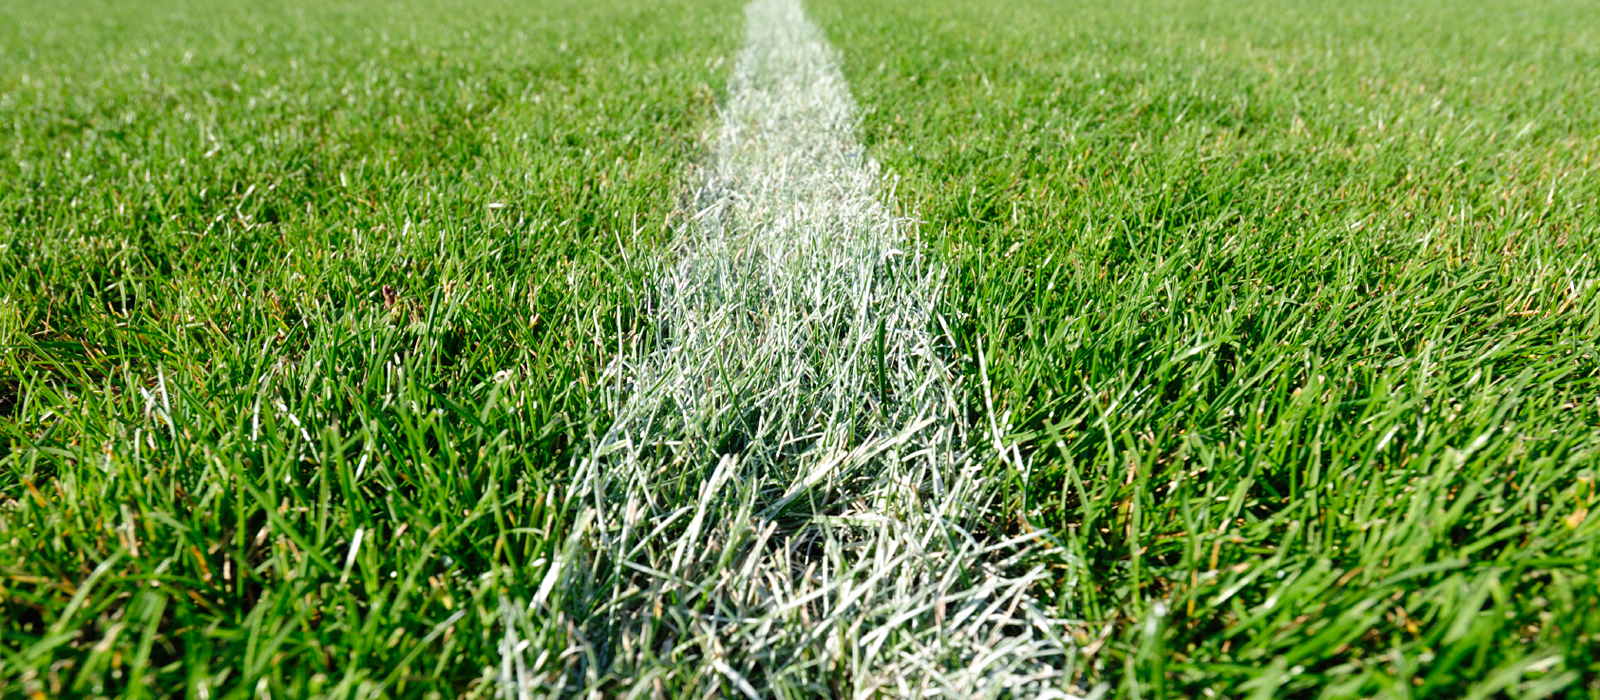 Turfgrass on sports field